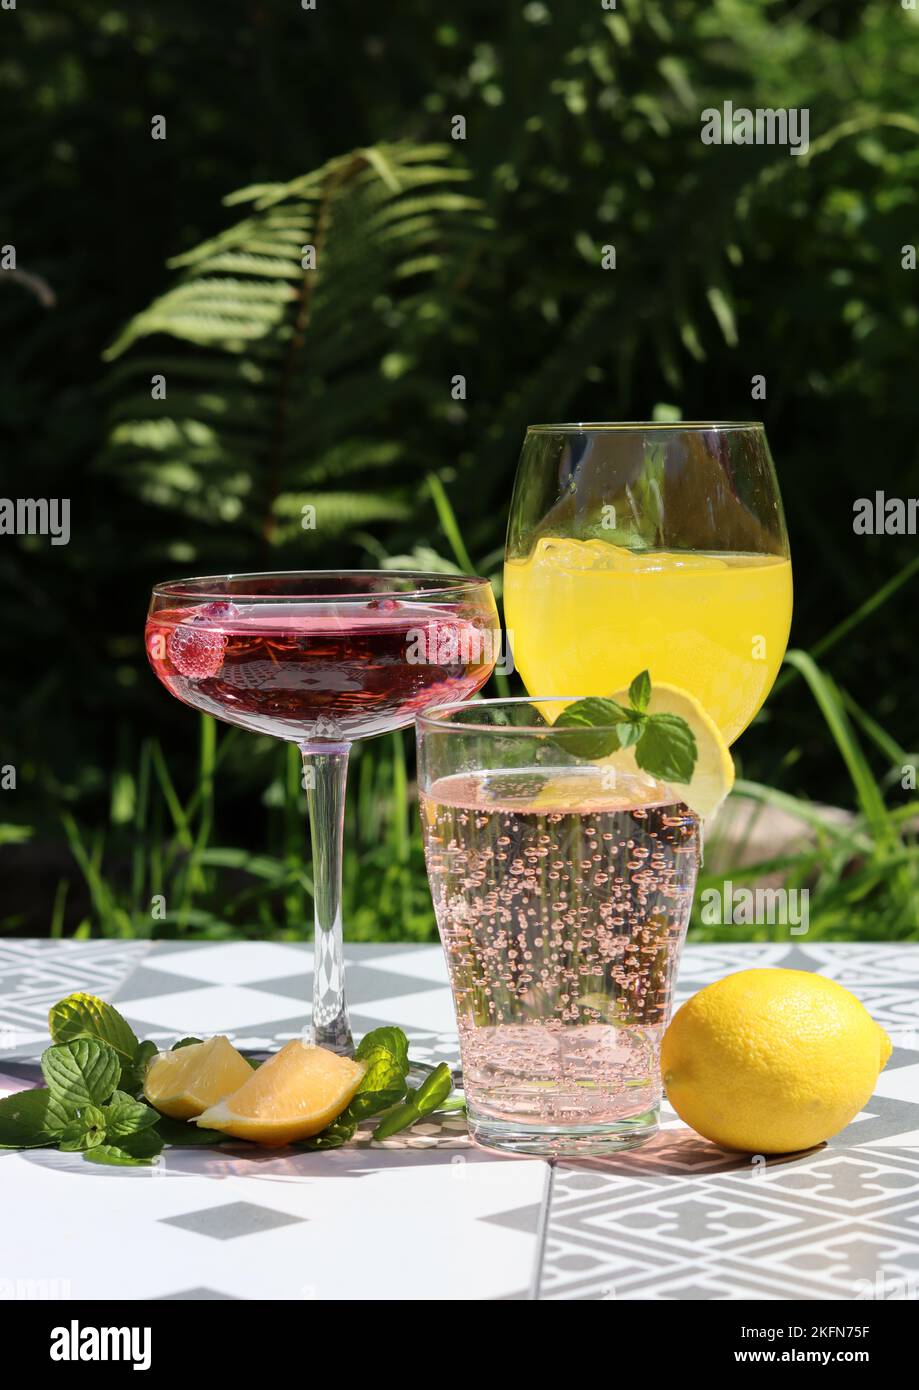 Cocktails rafraîchissants sur une table de jardin. Gros plan des verres avec différentes boissons. Faites la fête dans un jardin. Banque D'Images